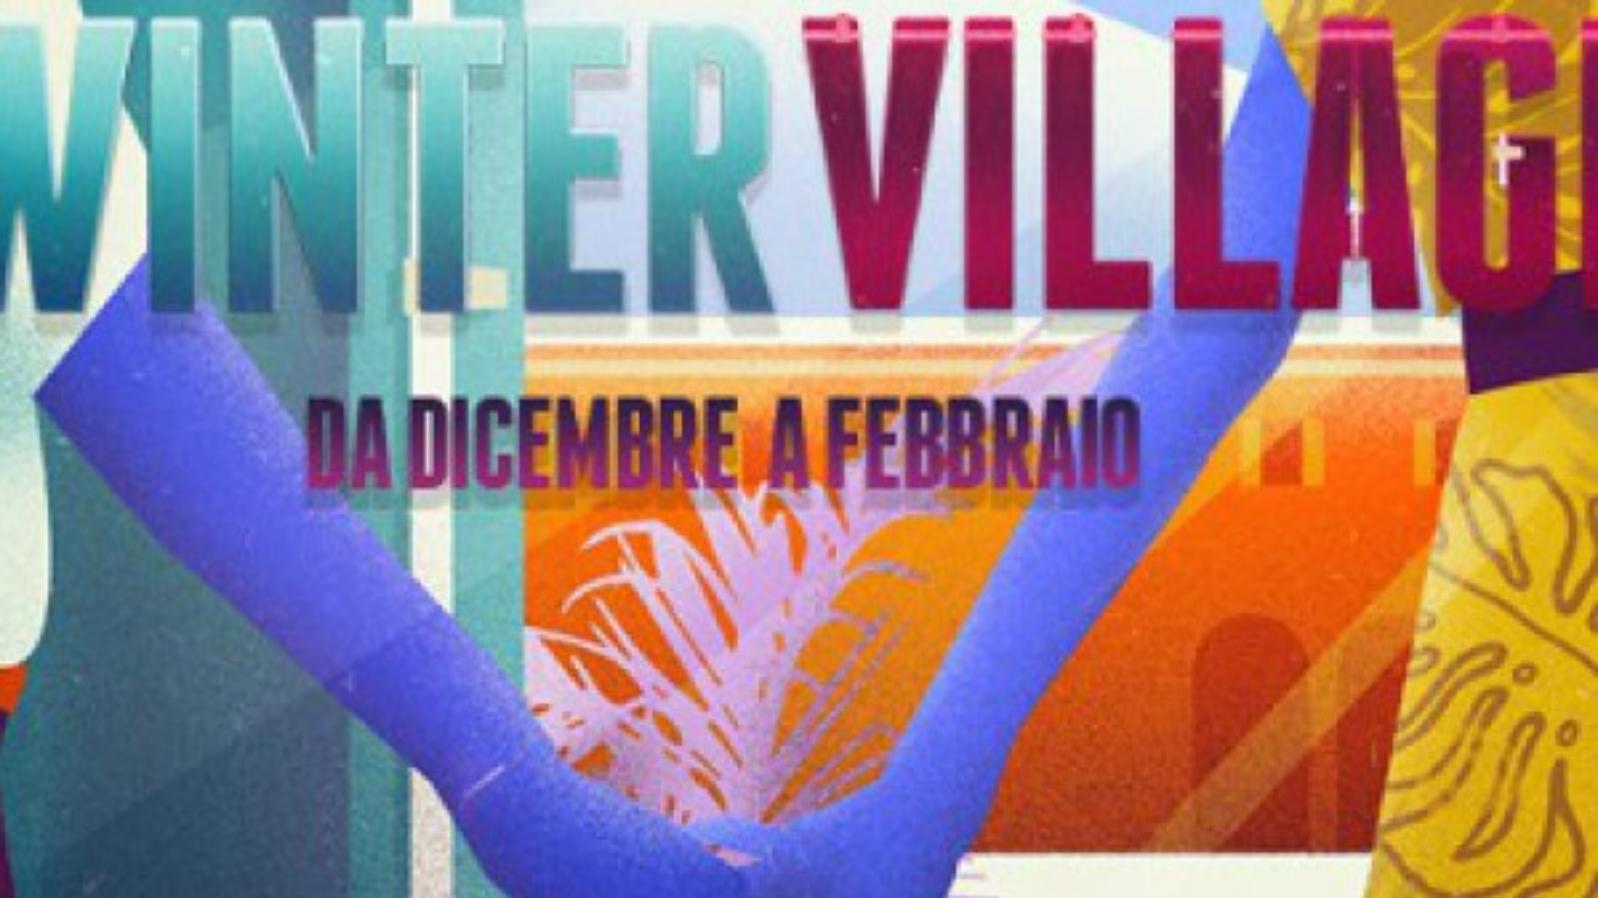 Poster wintervillage